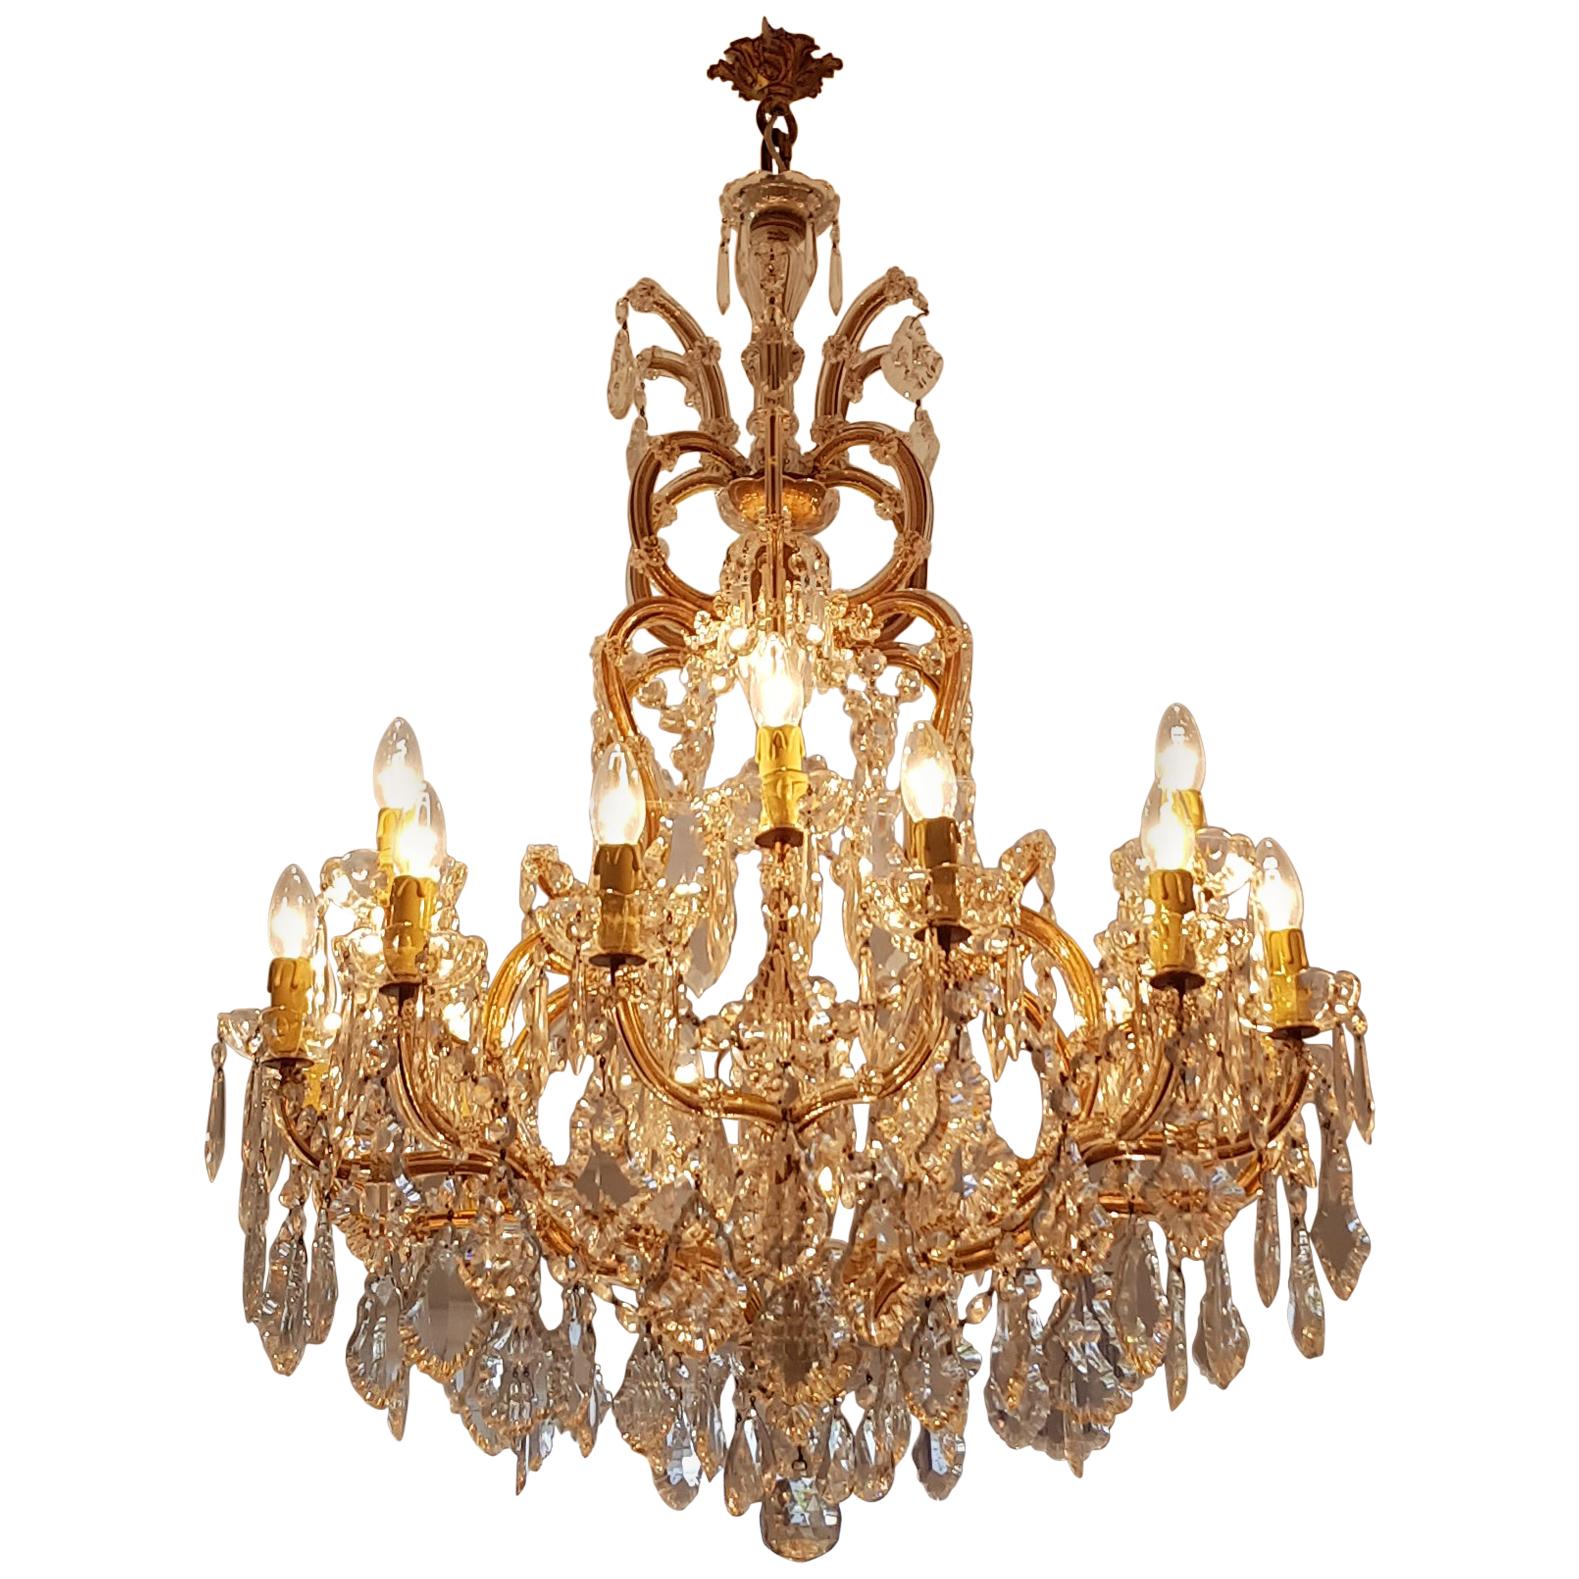 Nineteen-Light Maria Theresa Chandelier Antique Ceiling Lamp Lustre Art Nouveau